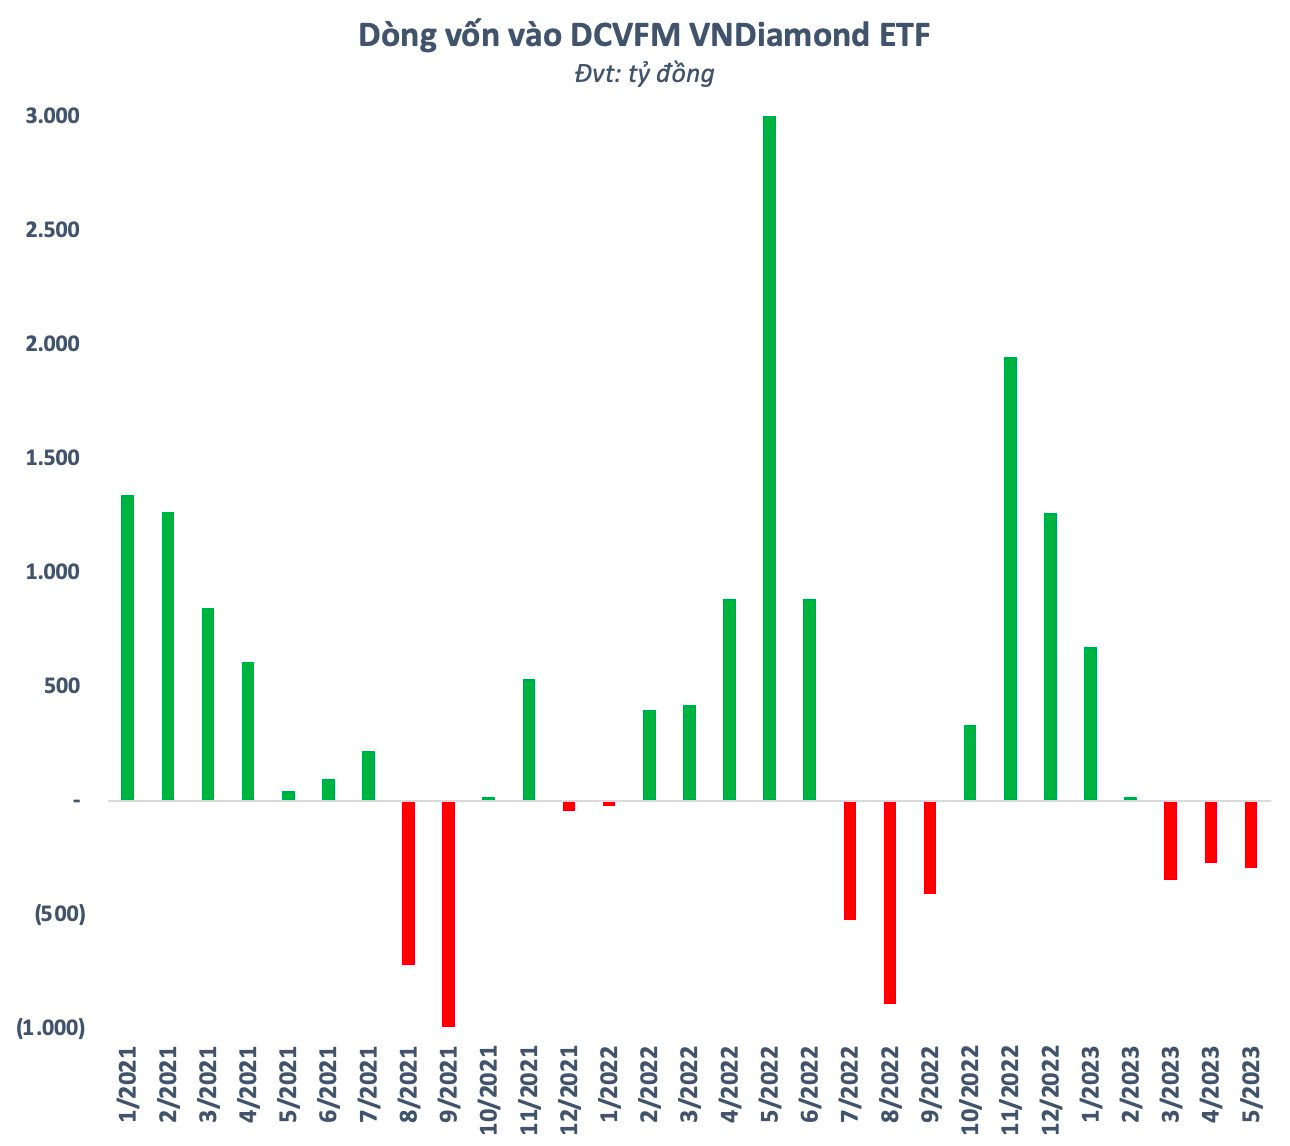 DCVFM VNDiamond ETF bất ngờ trở thành quỹ có hiệu suất âm duy nhất từ đầu năm trong nhóm Dragon Capital, điều gì đang diễn ra? - Ảnh 2.